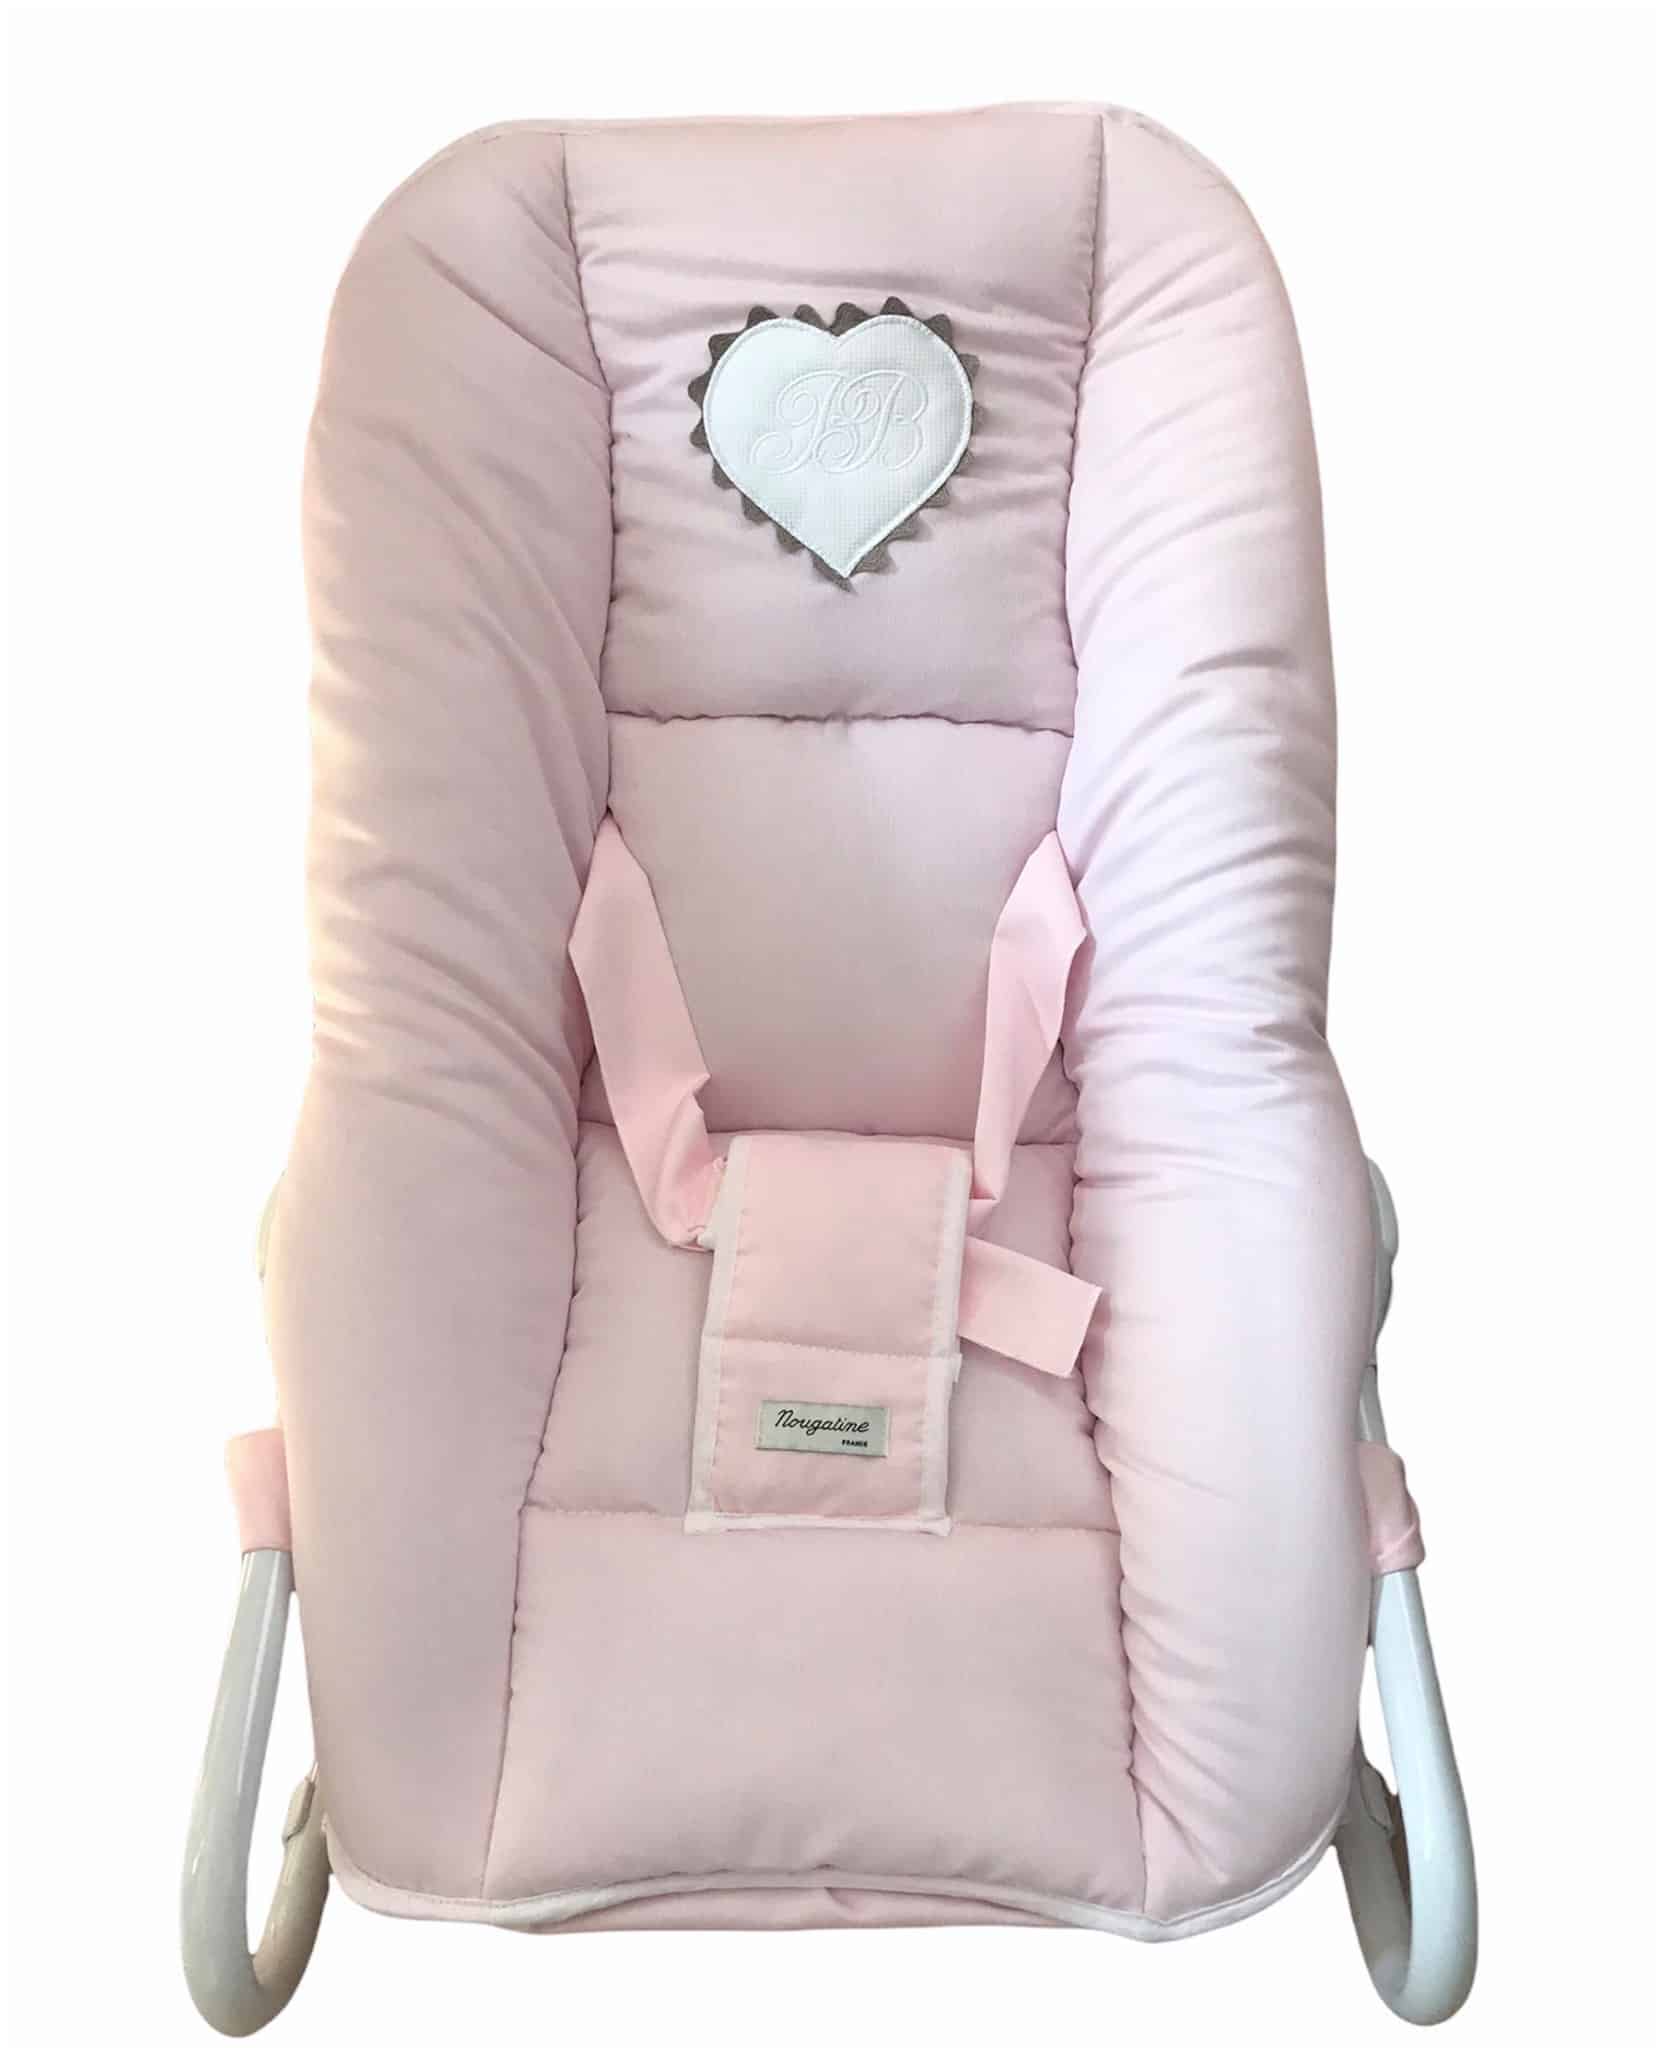 Transat bébé 3 Positions Coton Blanc/Rose Emma - Maison Nougatine